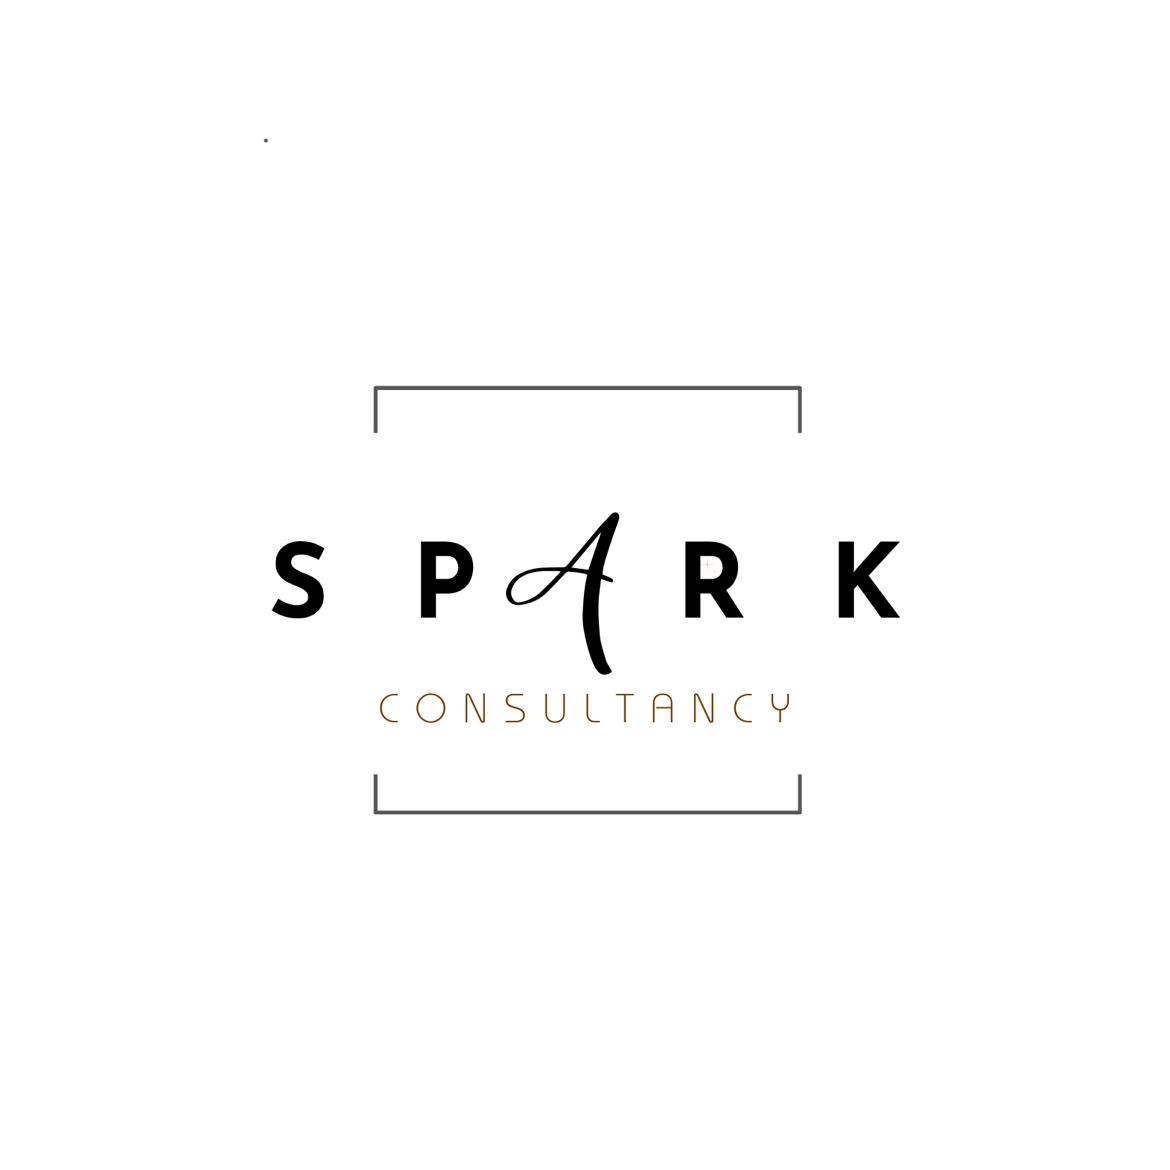 Sparkfinance's images